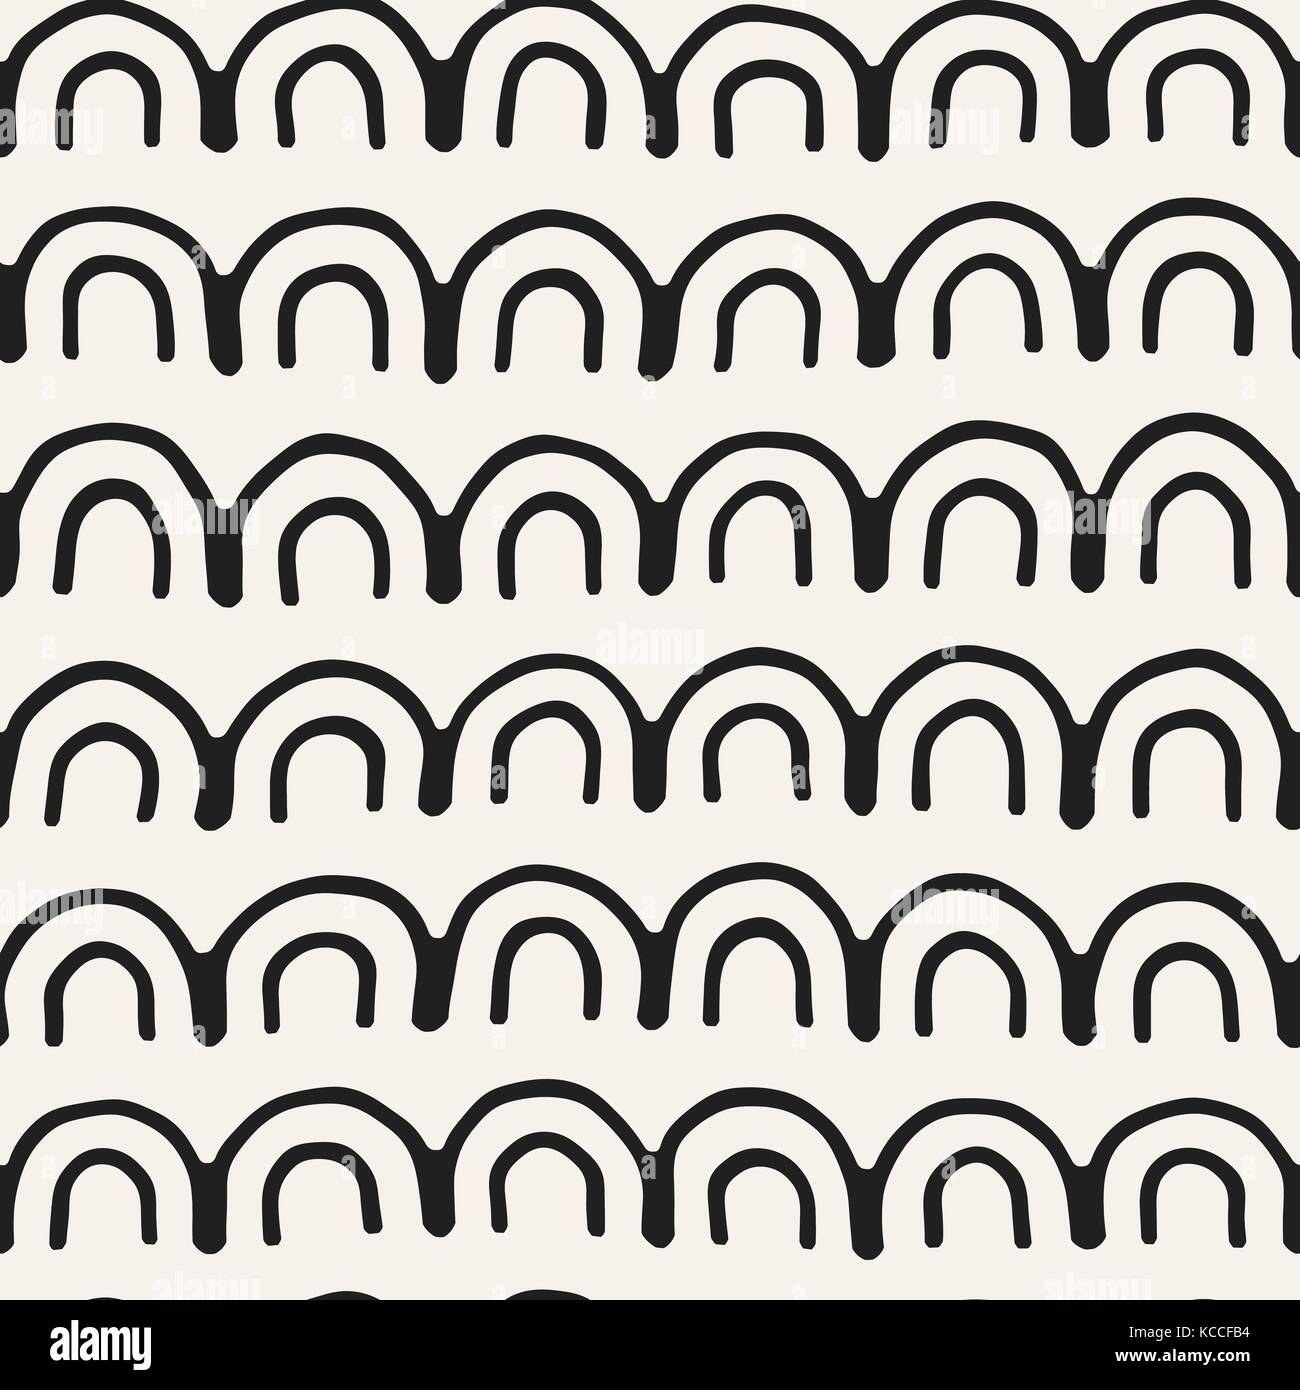 Monochrome minimalistisch Tribal nahtlose Muster mit arc Linien. vector Hintergrund mit inky Schwarze Kunst auf weißem gerundeten Streifen. Stock Vektor